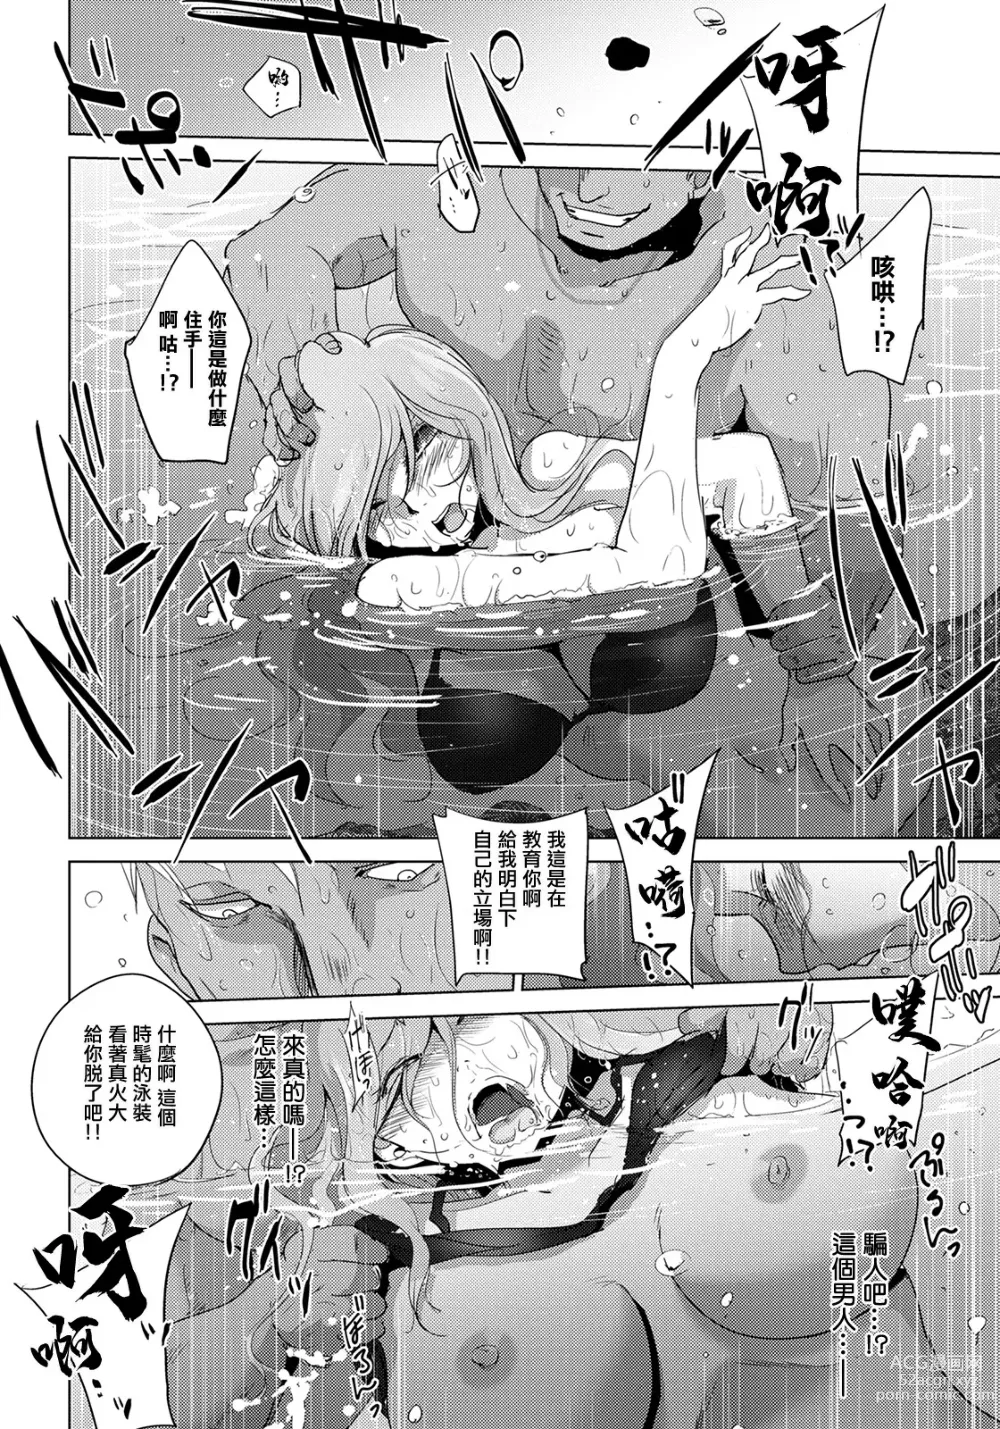 Page 6 of manga Rinjoku Juurin ~Migiwa no Shachou Reijou~